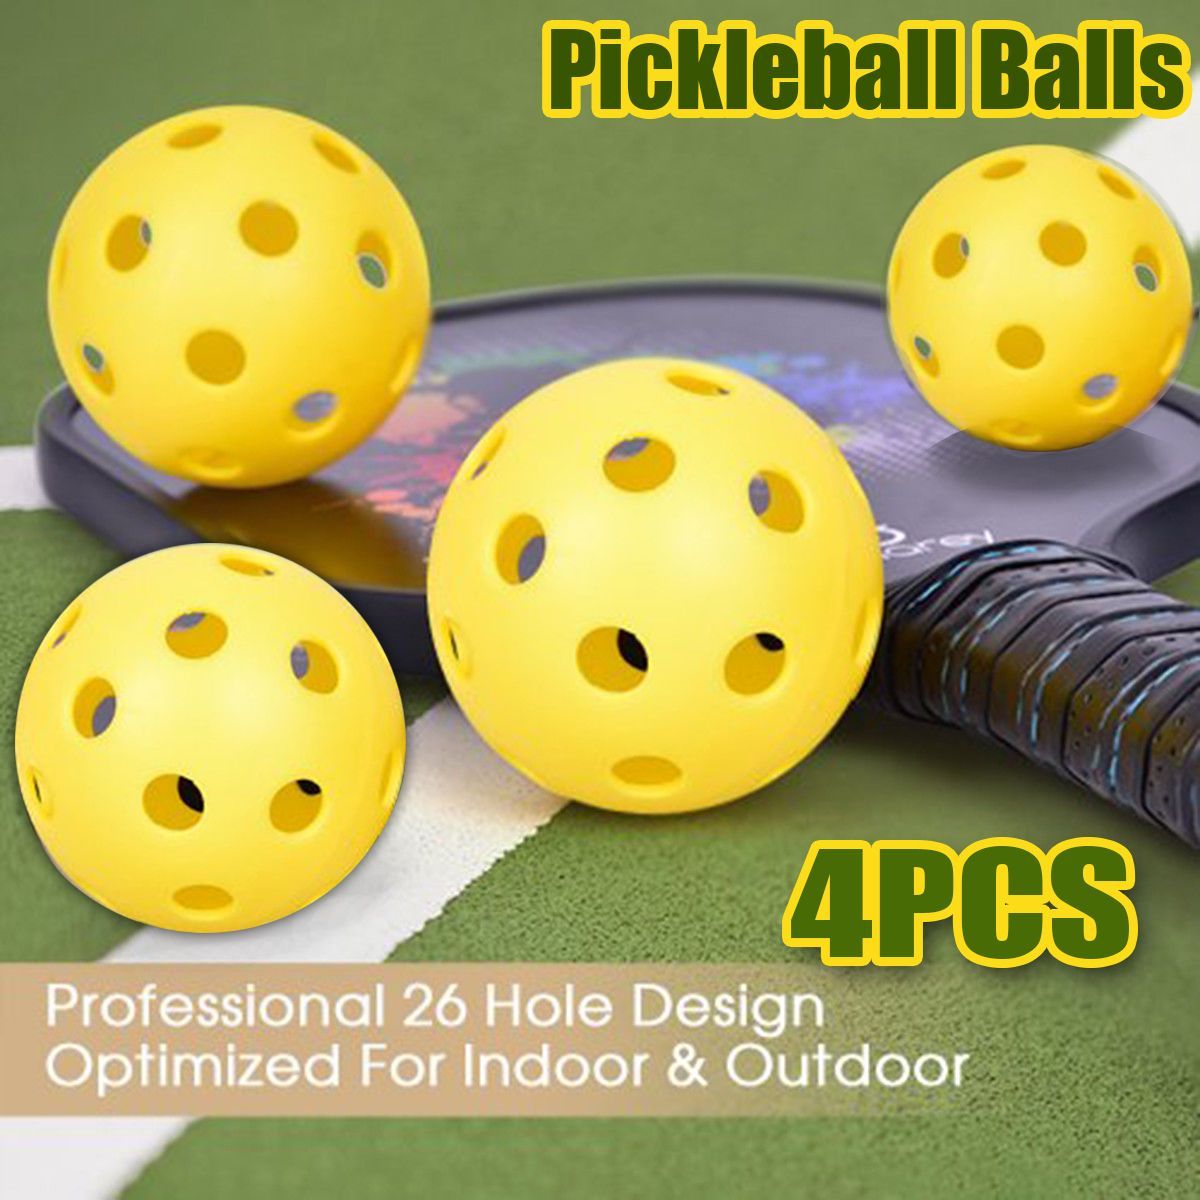 4PcsSet-Pickleball-Balls-Pro-26-Holes-Design-for-Outdoor-amp-Indoor-Sport-Toys-1574773